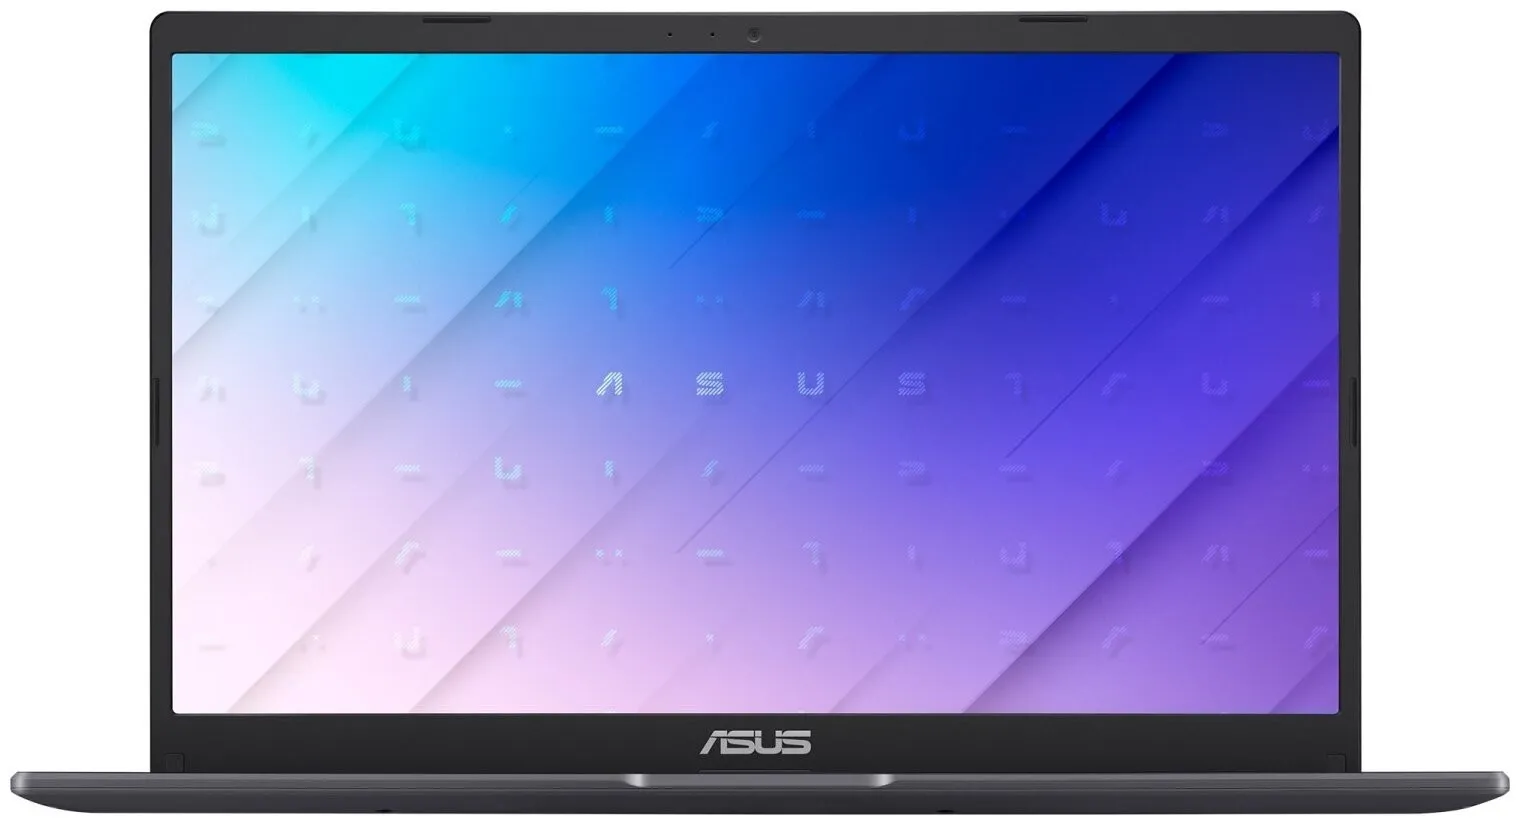 Noutbuk Asus E510 (N4020 | 4GB | 256GB | 15.6") + Windows 10 + sovgaga mishka#3